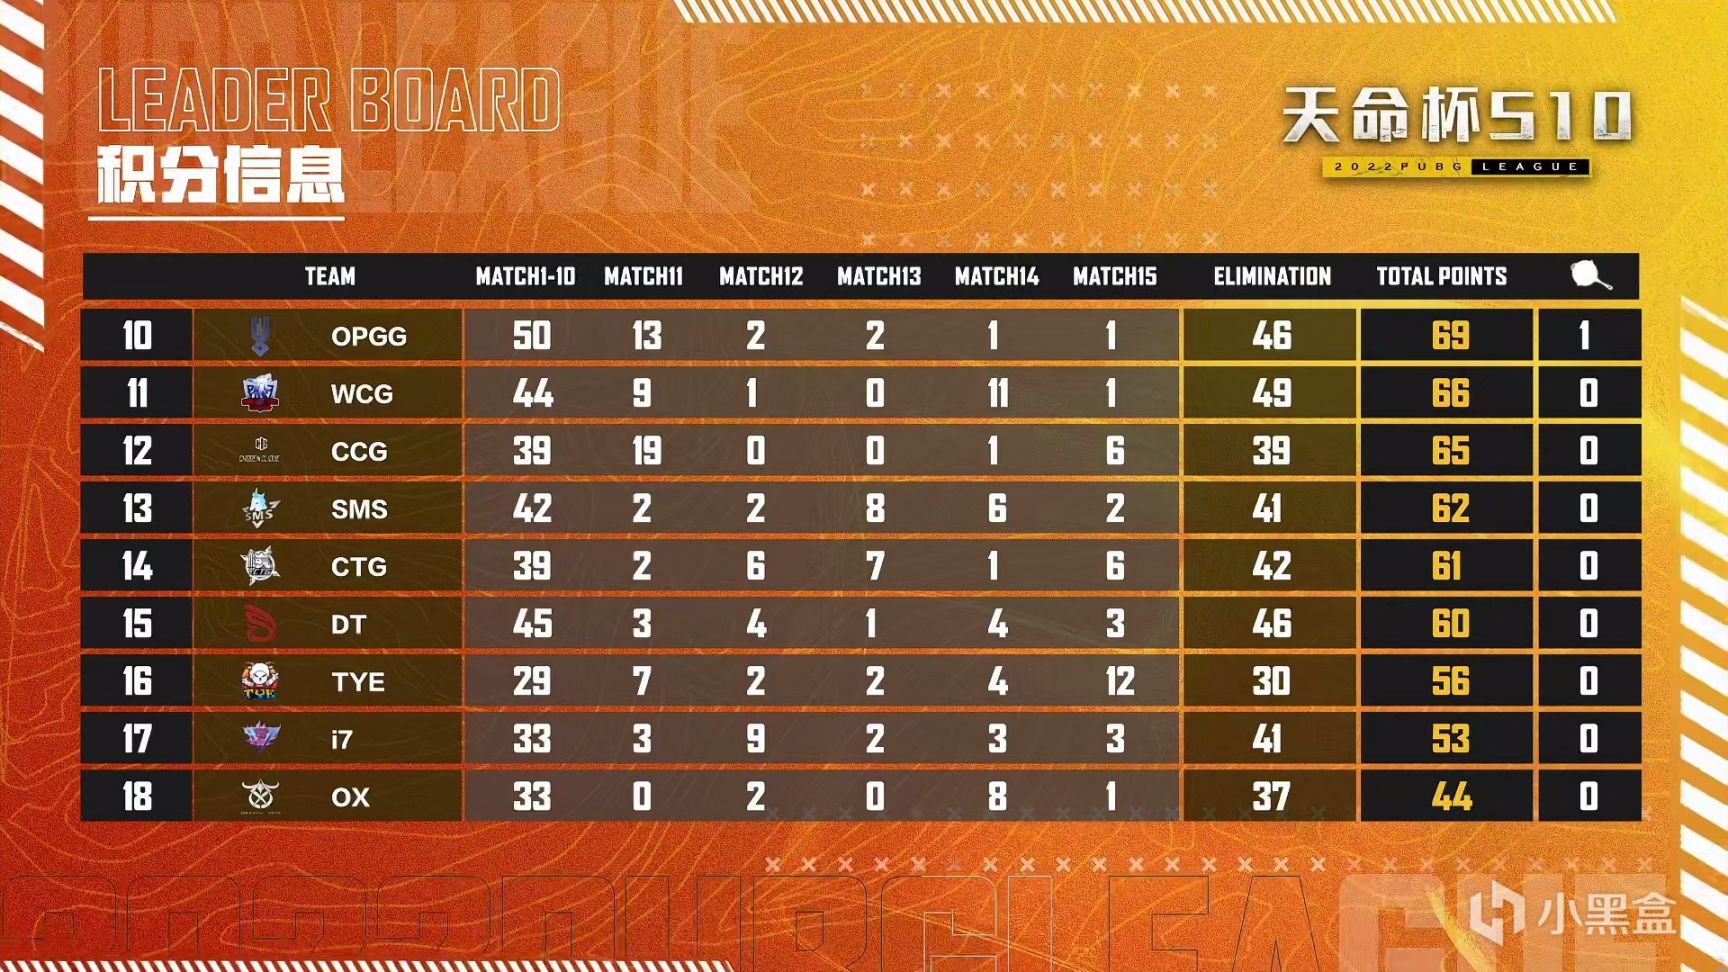 【数据流】天命杯决赛D3,Tianba继续拉开分差,总分192,场均12.8-第2张